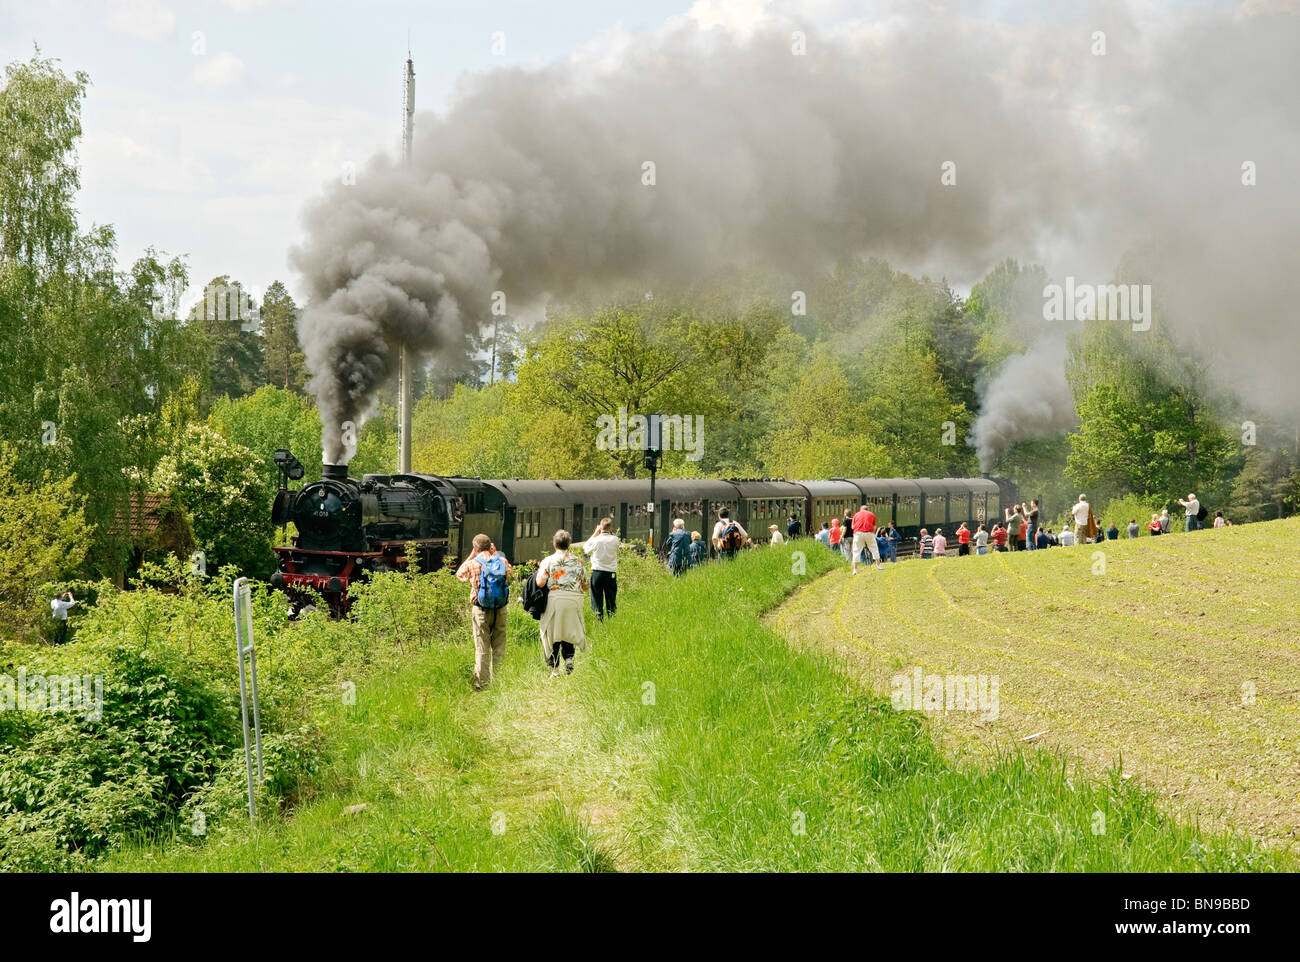 Dampf-Zug Exkursion klettern die "Schiefe Ebene" in der Nähe von Neuenmarkt, Franken, Bayern, neigen. Stockfoto